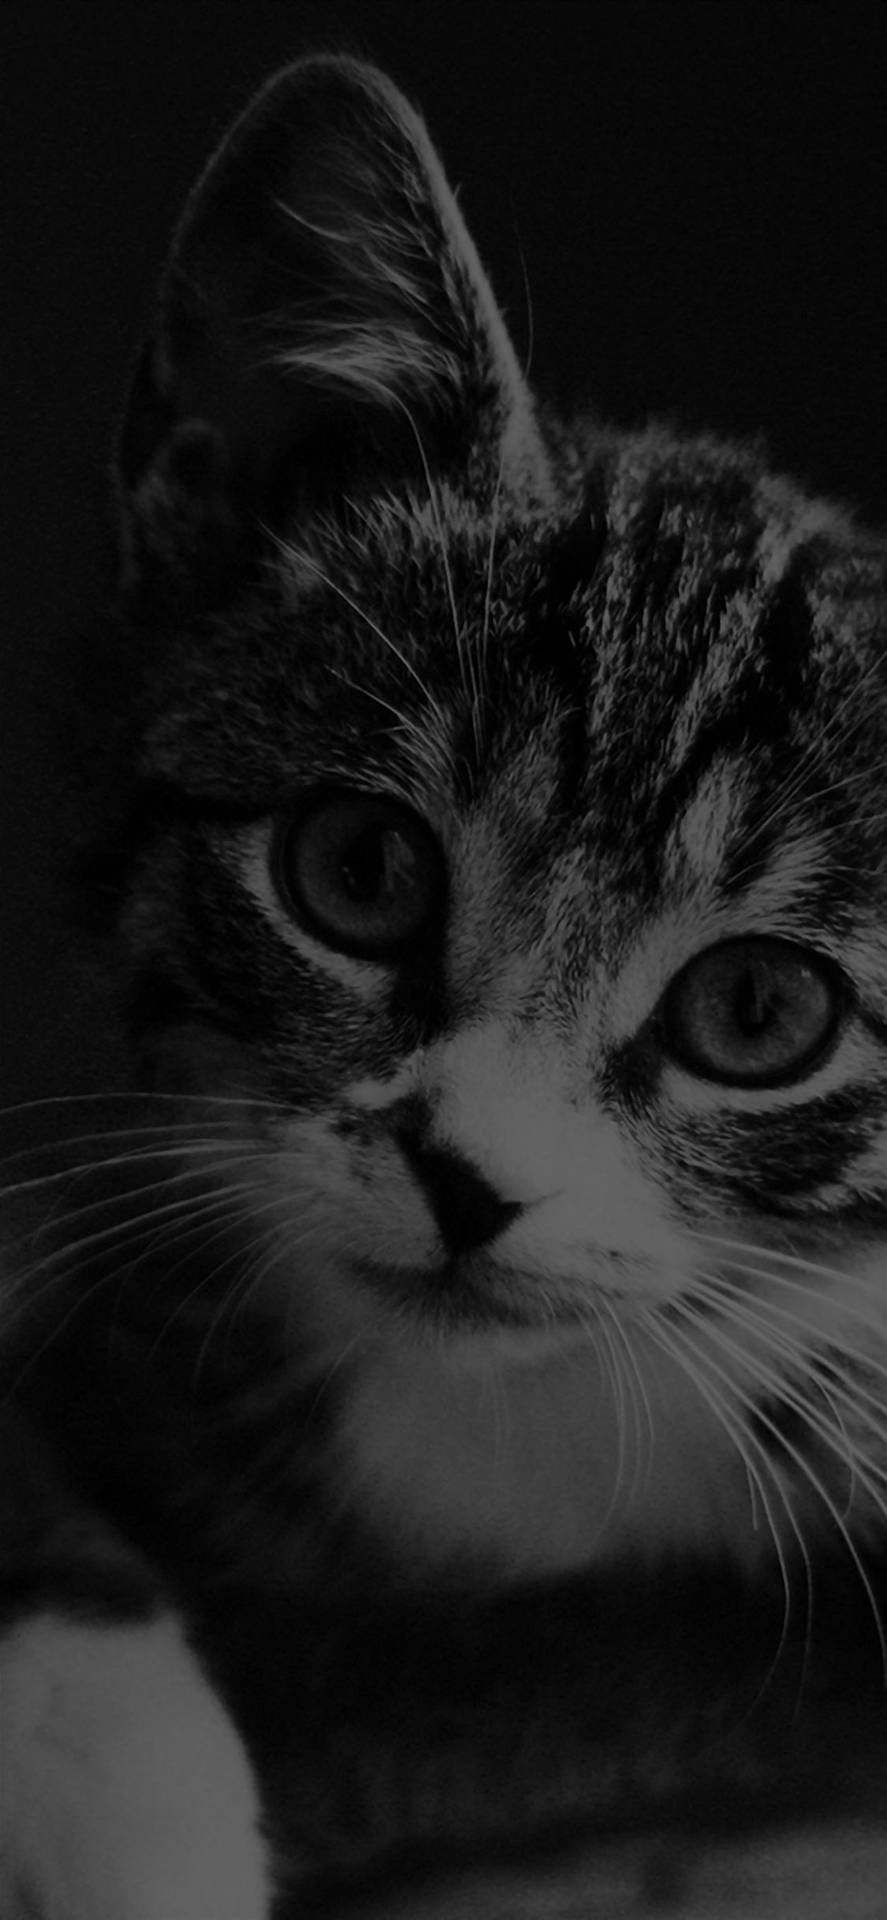 Schwarzesund Weißes Kätzchen Schwarzer Apple Iphone Wallpaper